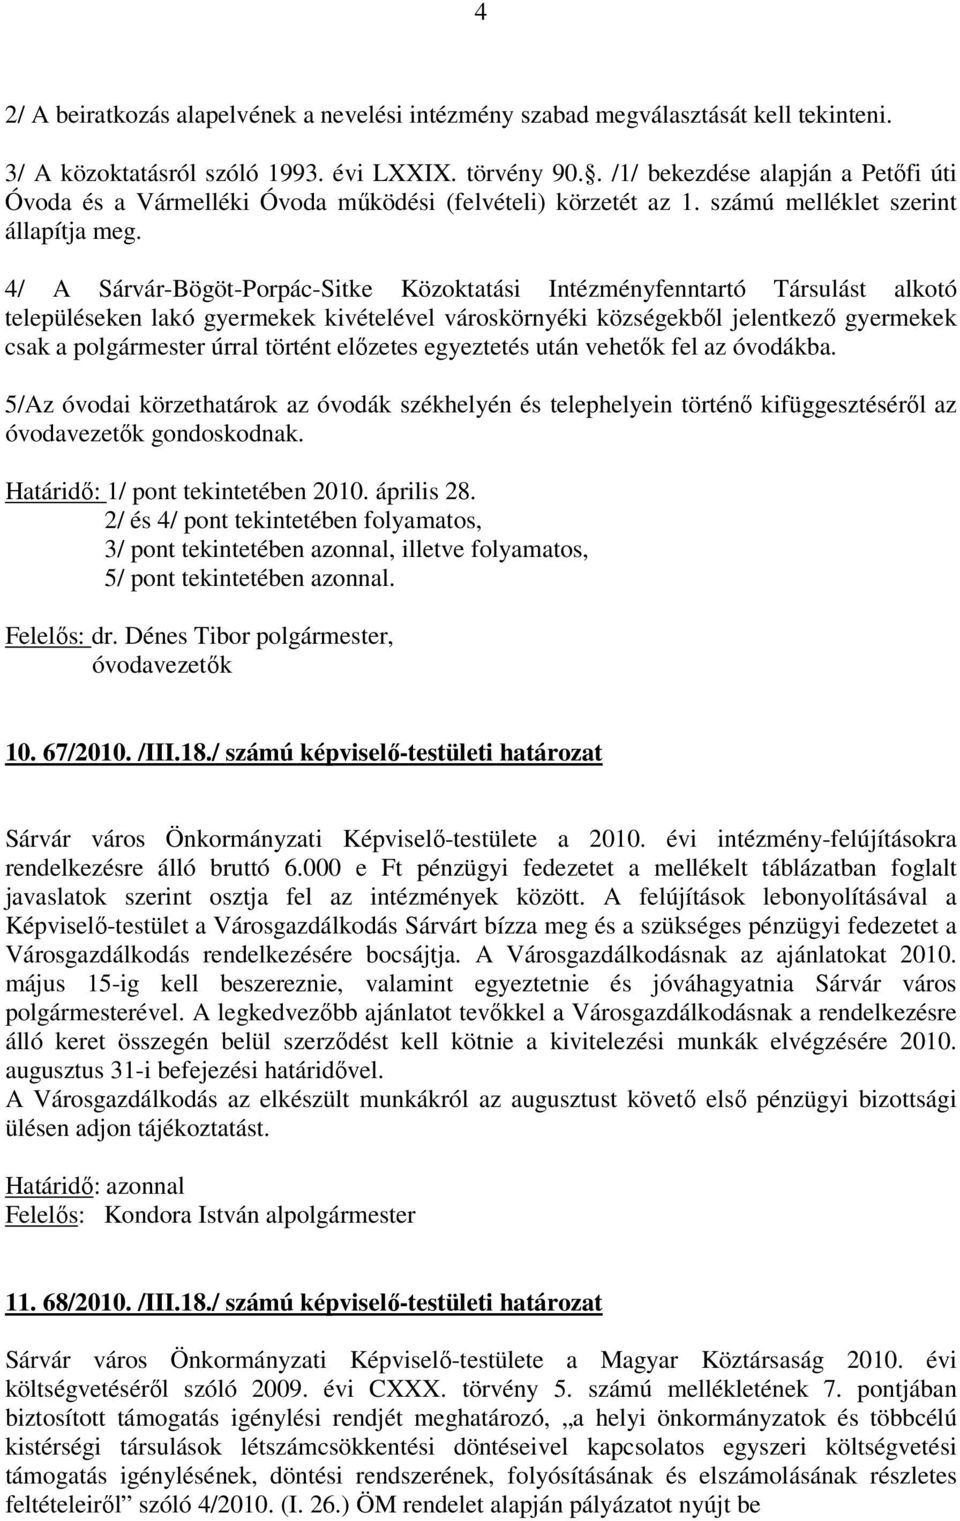 4/ A Sárvár-Bögöt-Porpác-Sitke Közoktatási Intézményfenntartó Társulást alkotó településeken lakó gyermekek kivételével városkörnyéki községekből jelentkező gyermekek csak a polgármester úrral